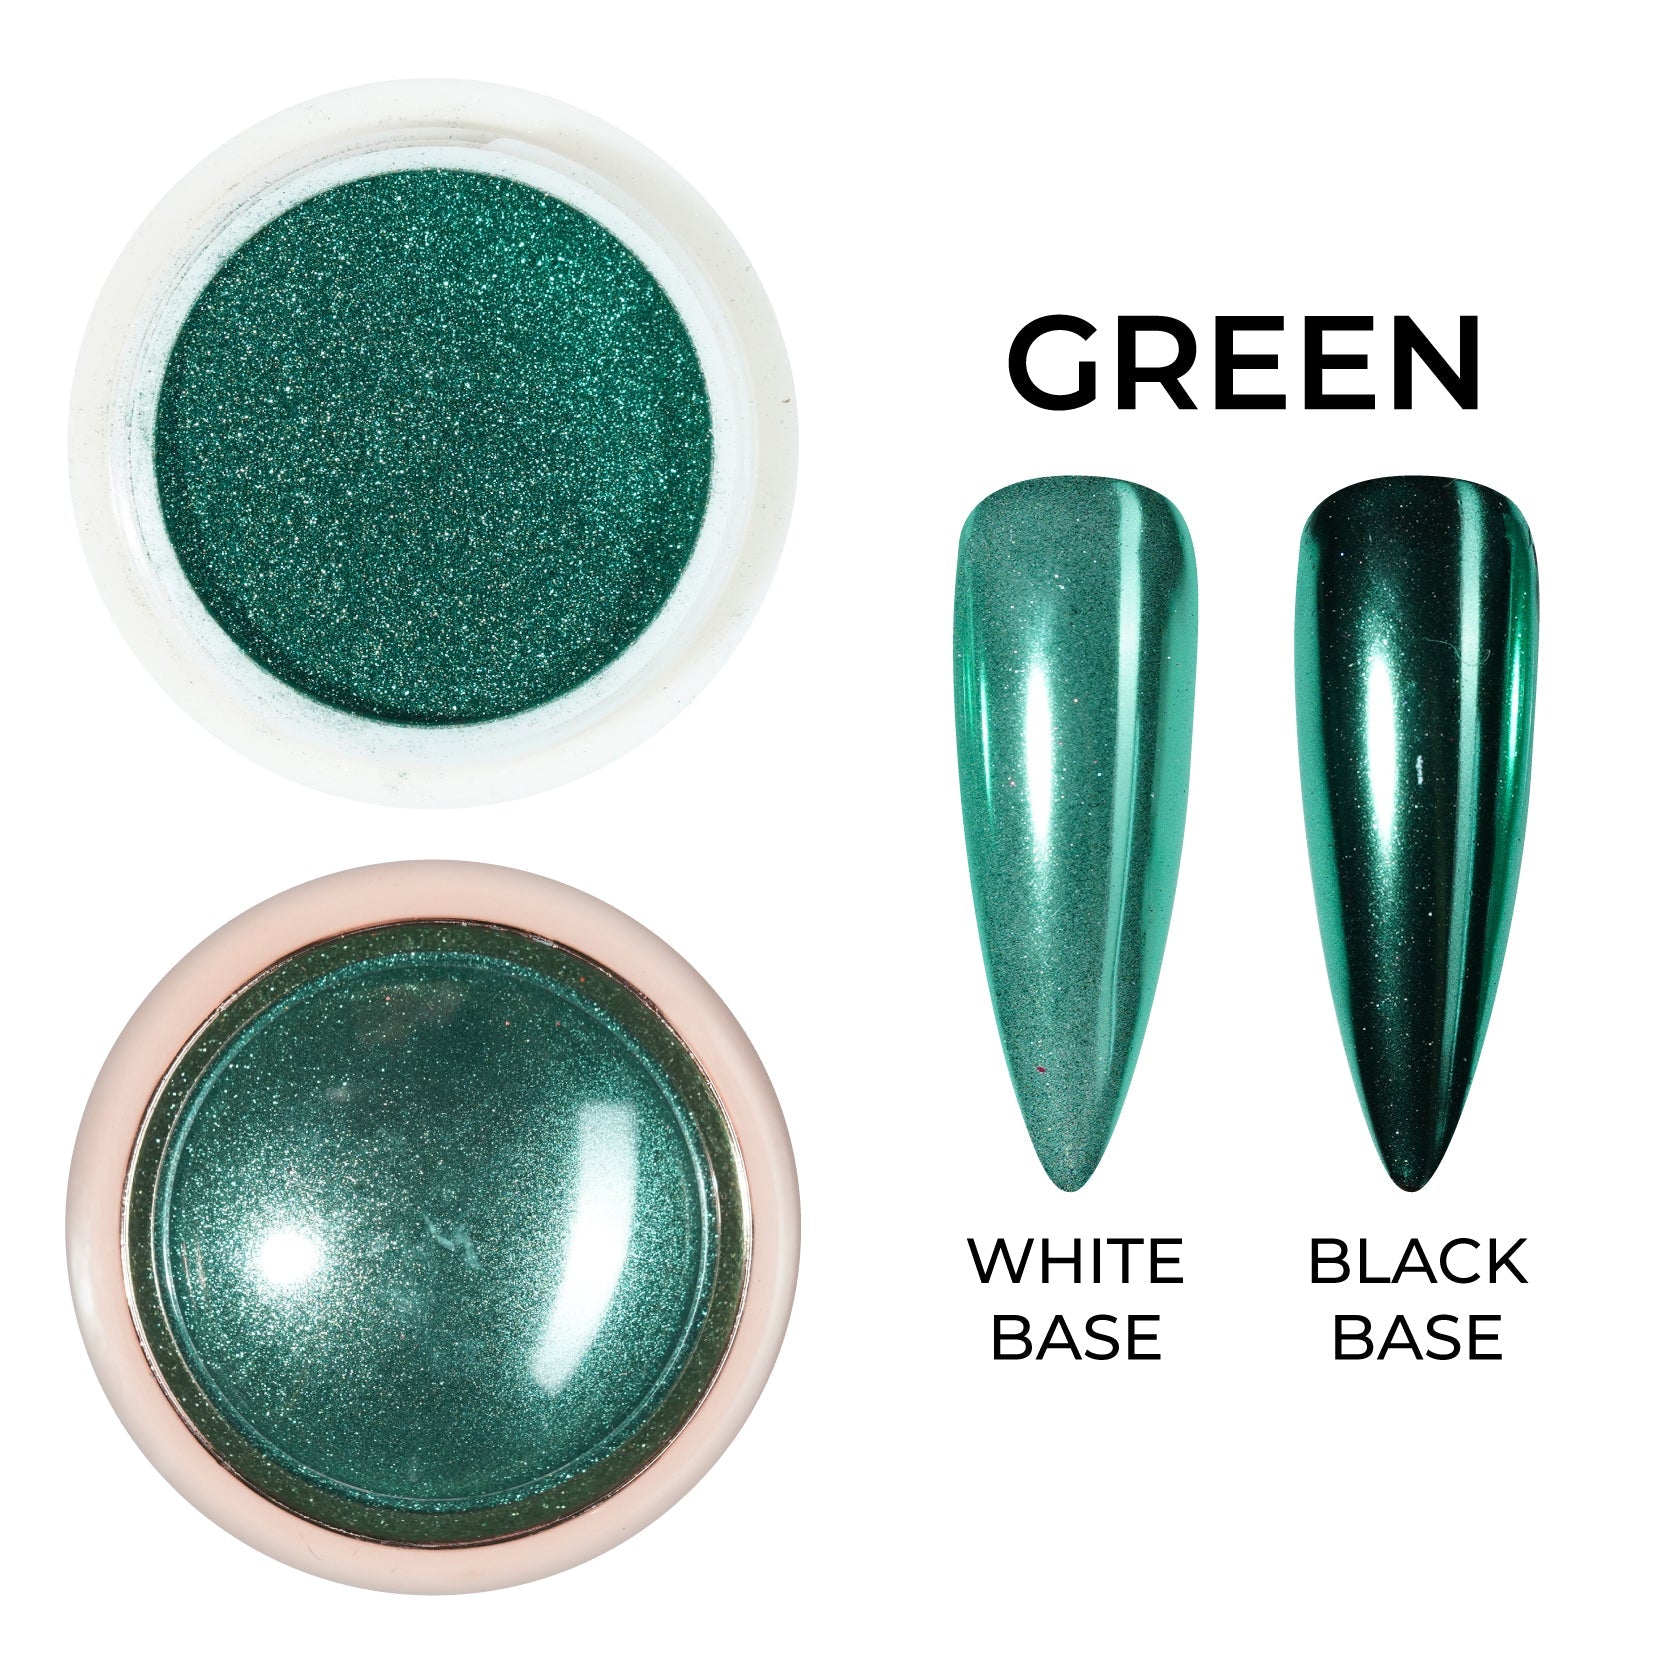 Olive Green Chrome Nails Military Green Gel X Shiny Finish Any Shape - Etsy